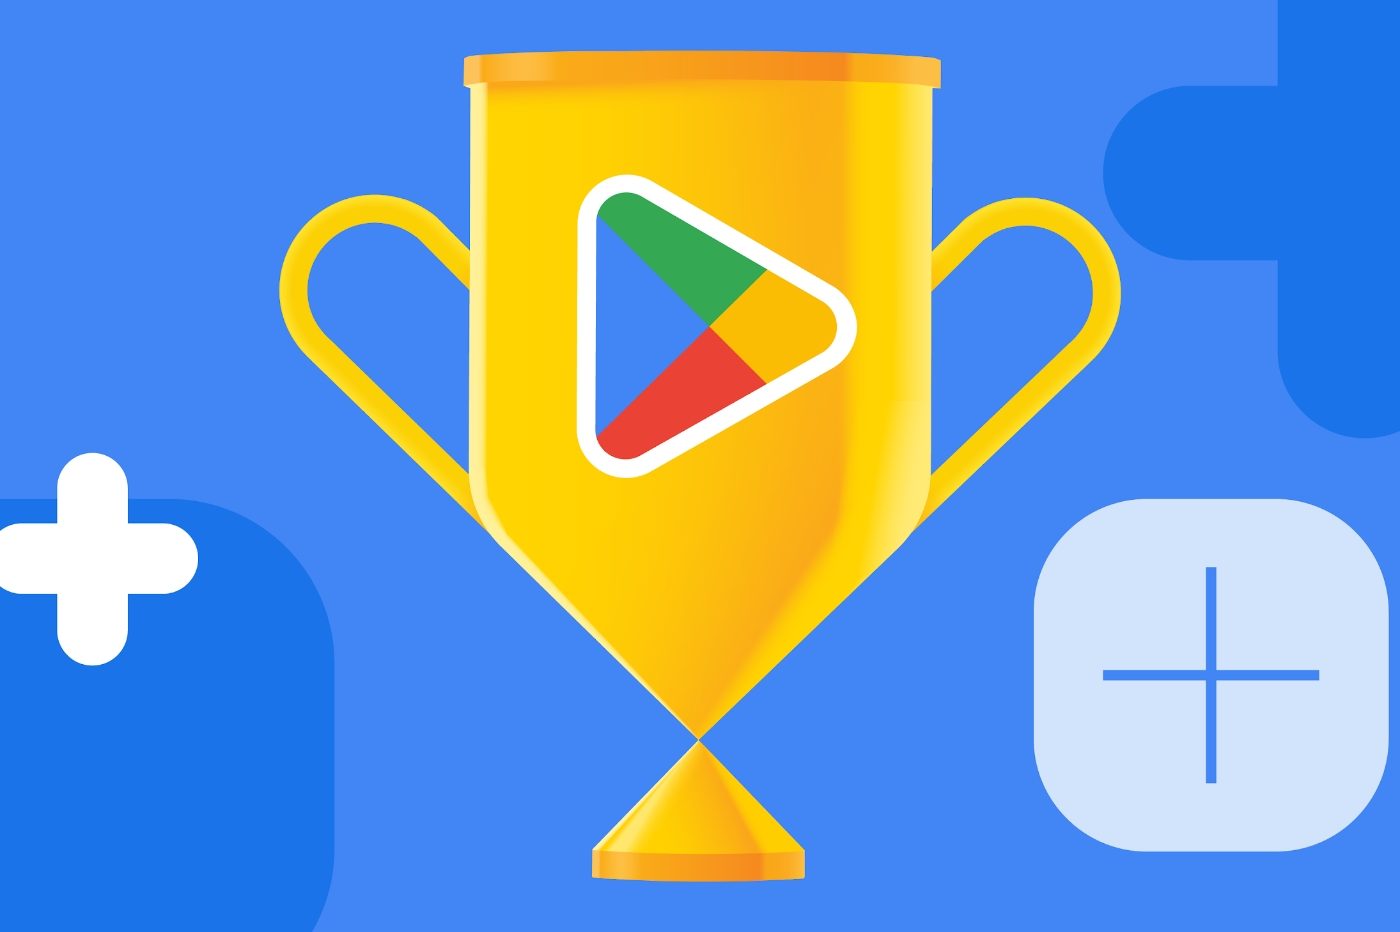 Play Store : trois nouvelles fonctionnalités sur lesquelles travaille Google